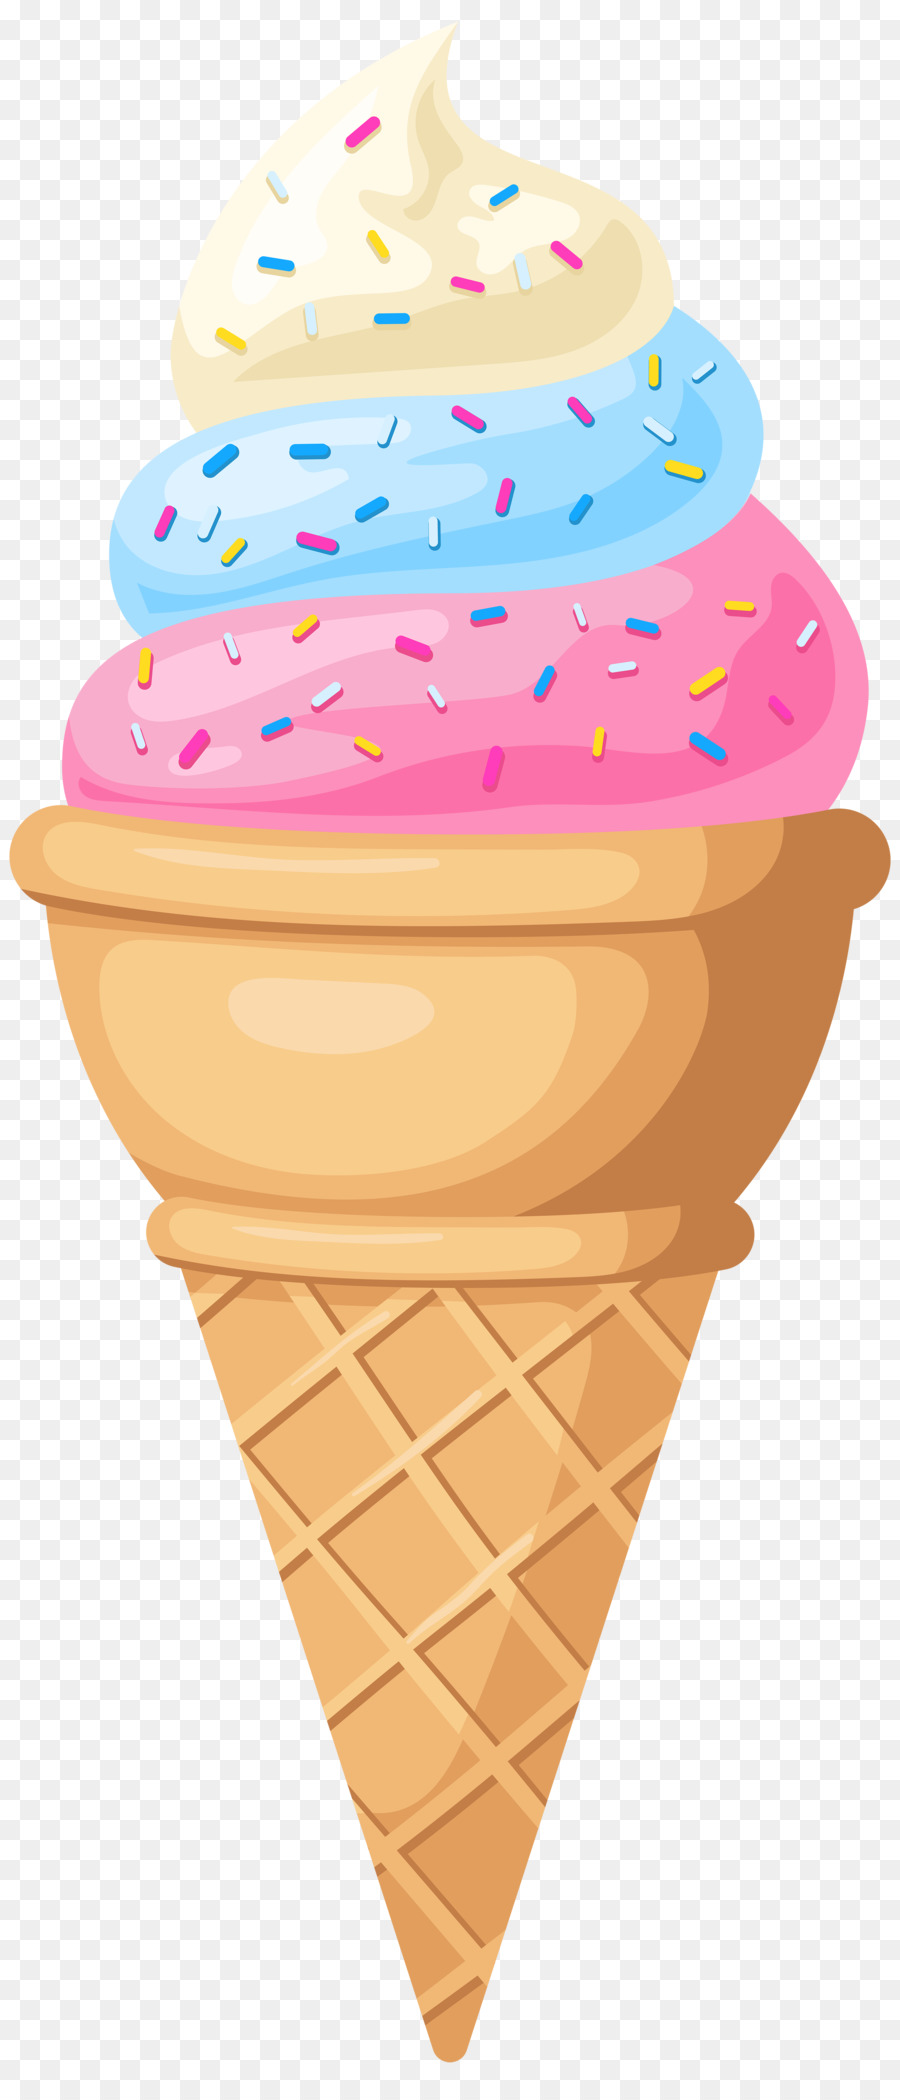 Ice Cream Cones Neapolitan ice cream Snow cone - ice cream png download - 2591*6000 - Free Transparent Ice Cream png Download.